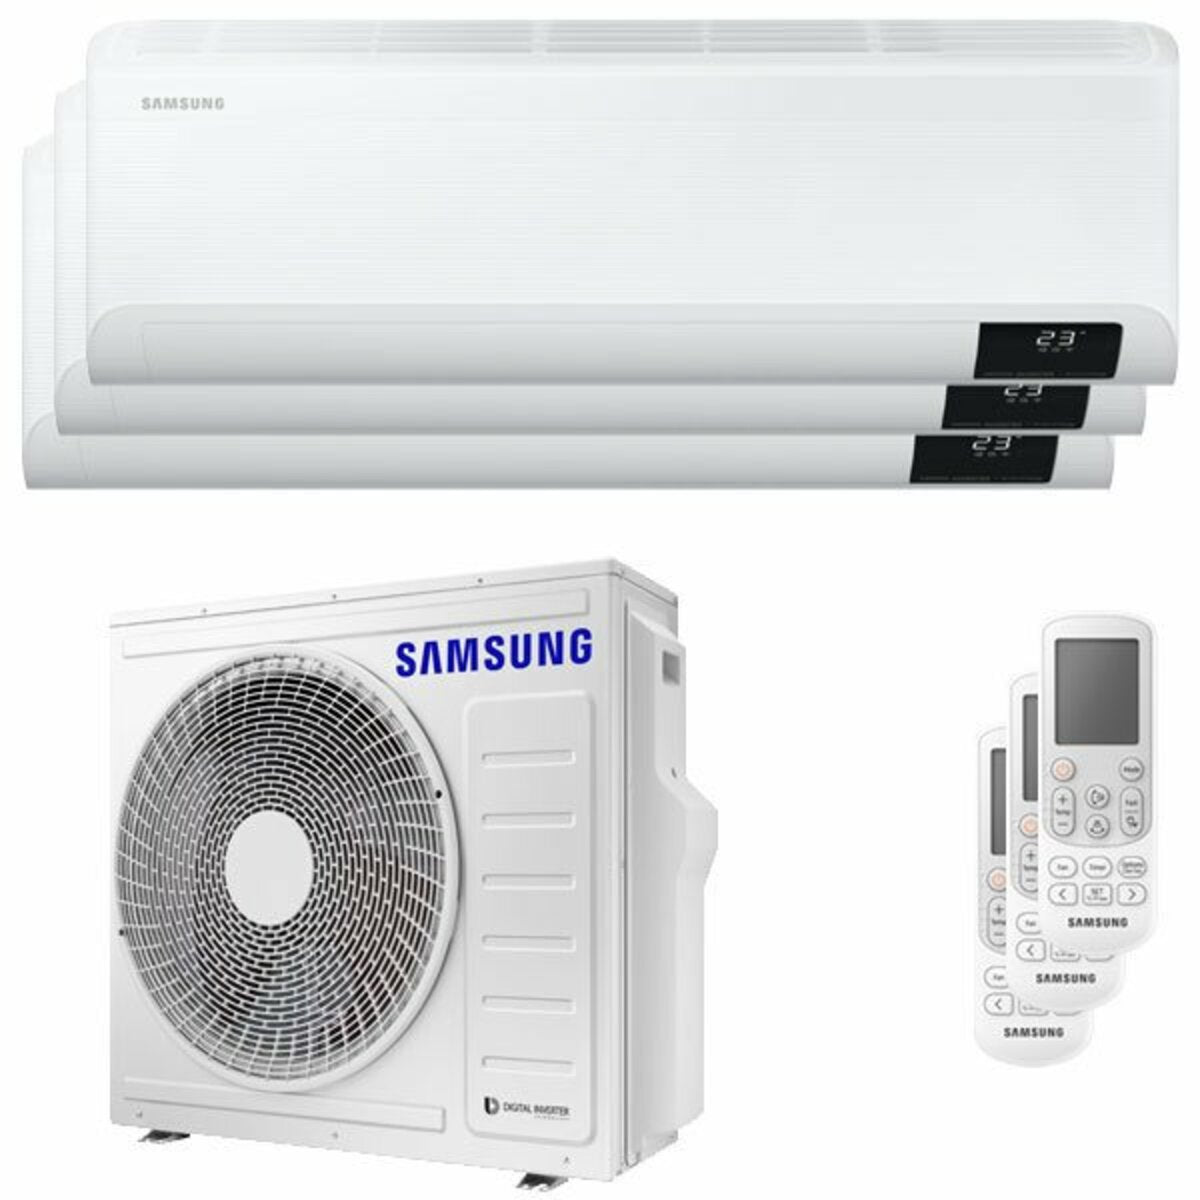 Samsung Cebu Wi-Fi Trial Split Klimaanlage 12000 + 12000 + 12000 BTU Wechselrichter A++ WLAN Außengerät 8,0 kW